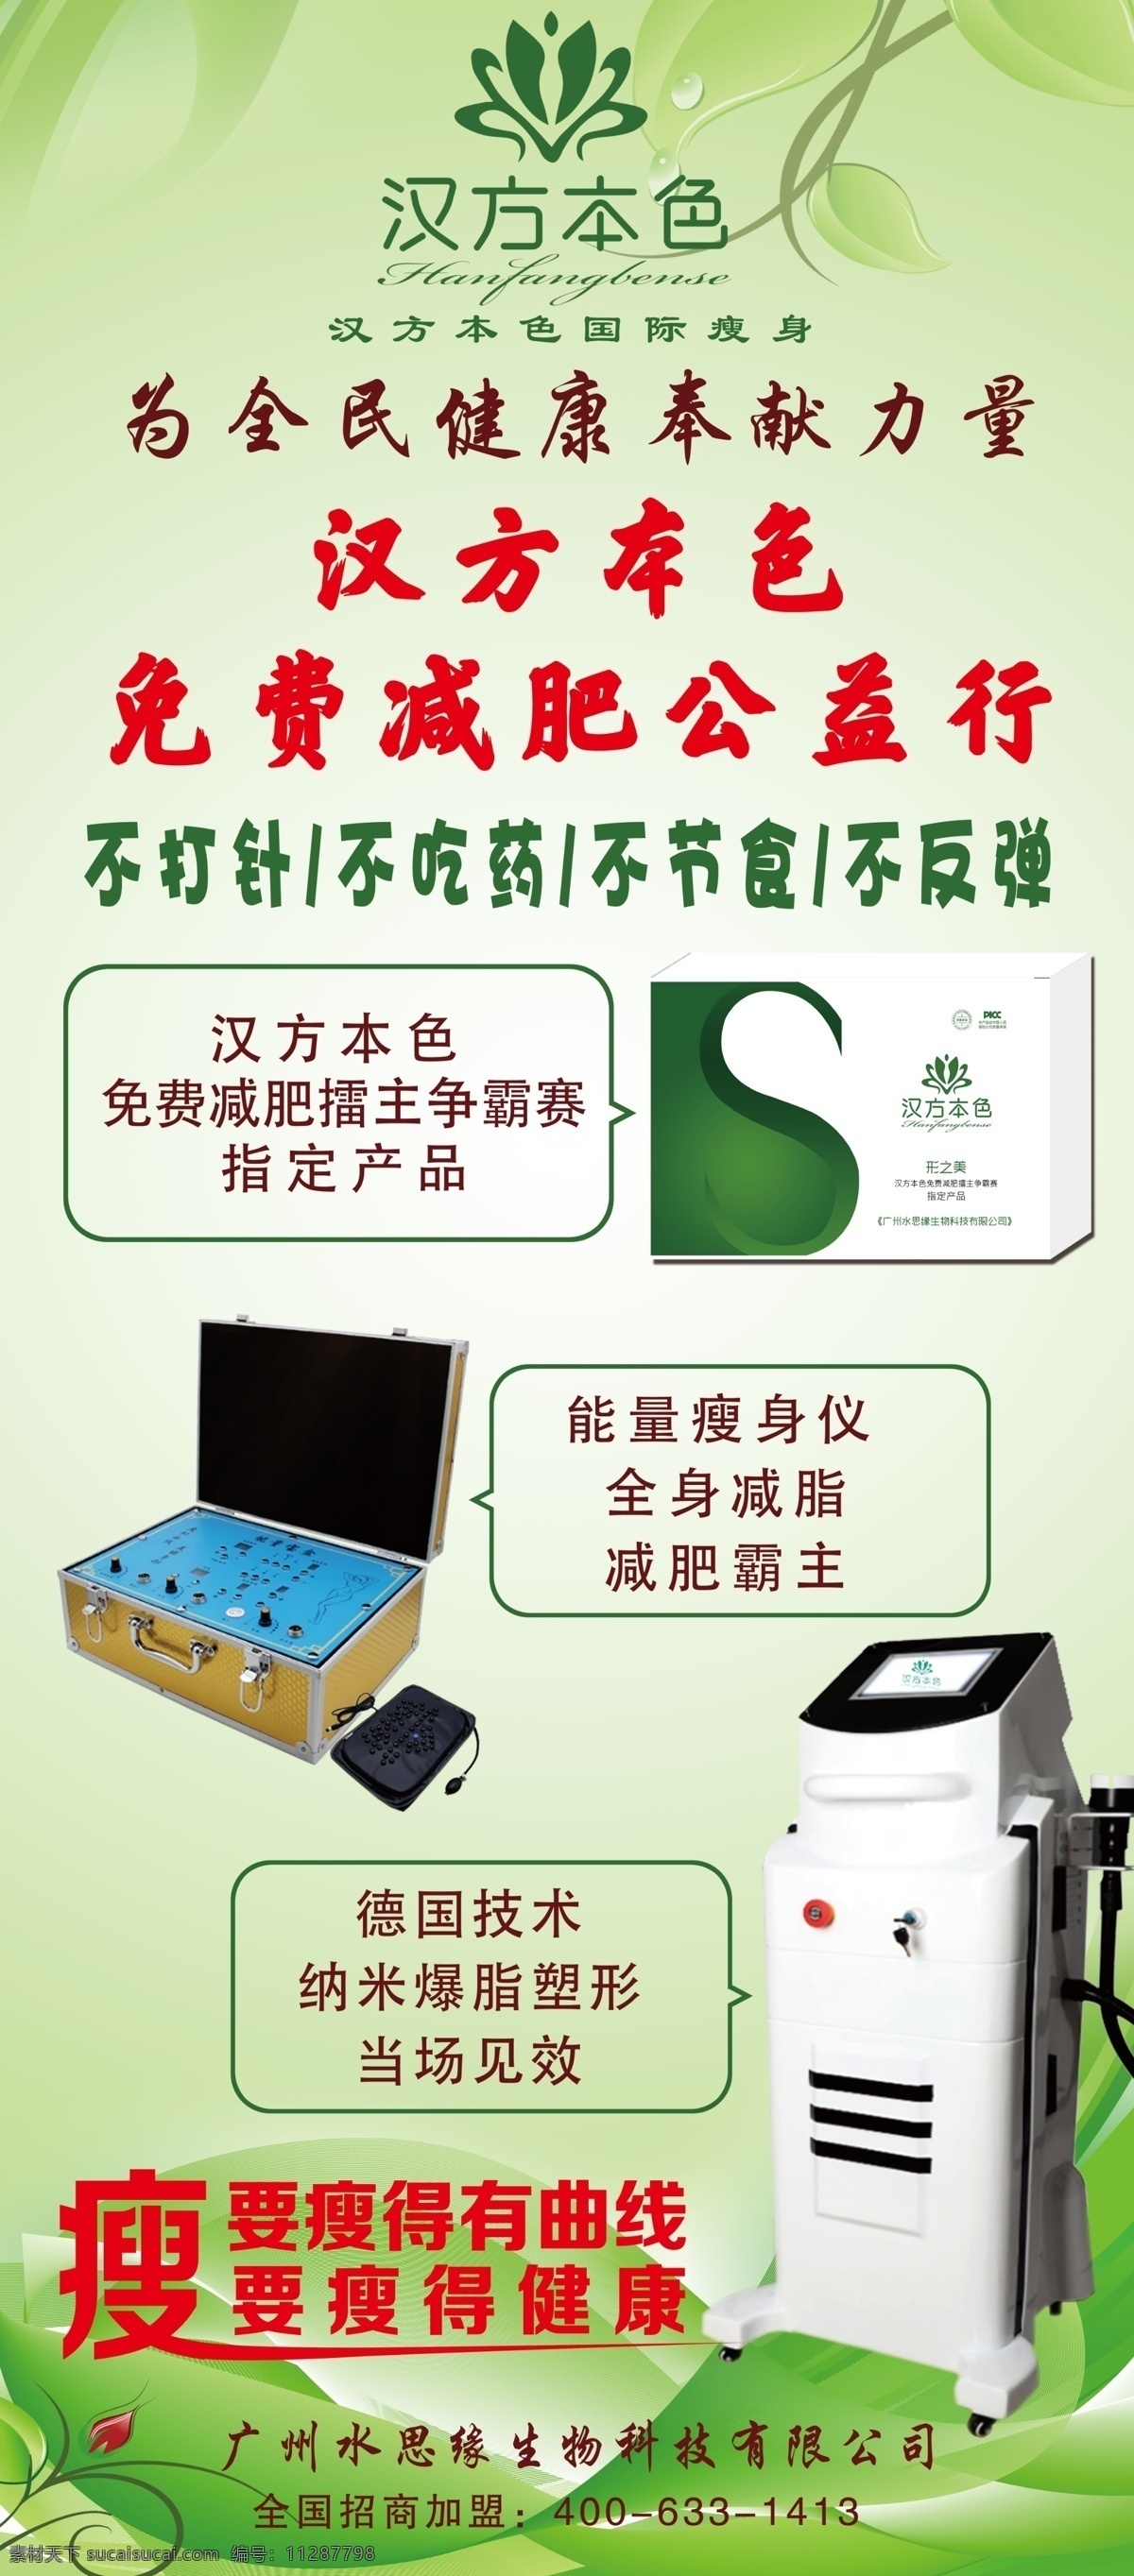 汉方本色 绿色展架 减肥展架 绿色减肥 能量瘦身仪